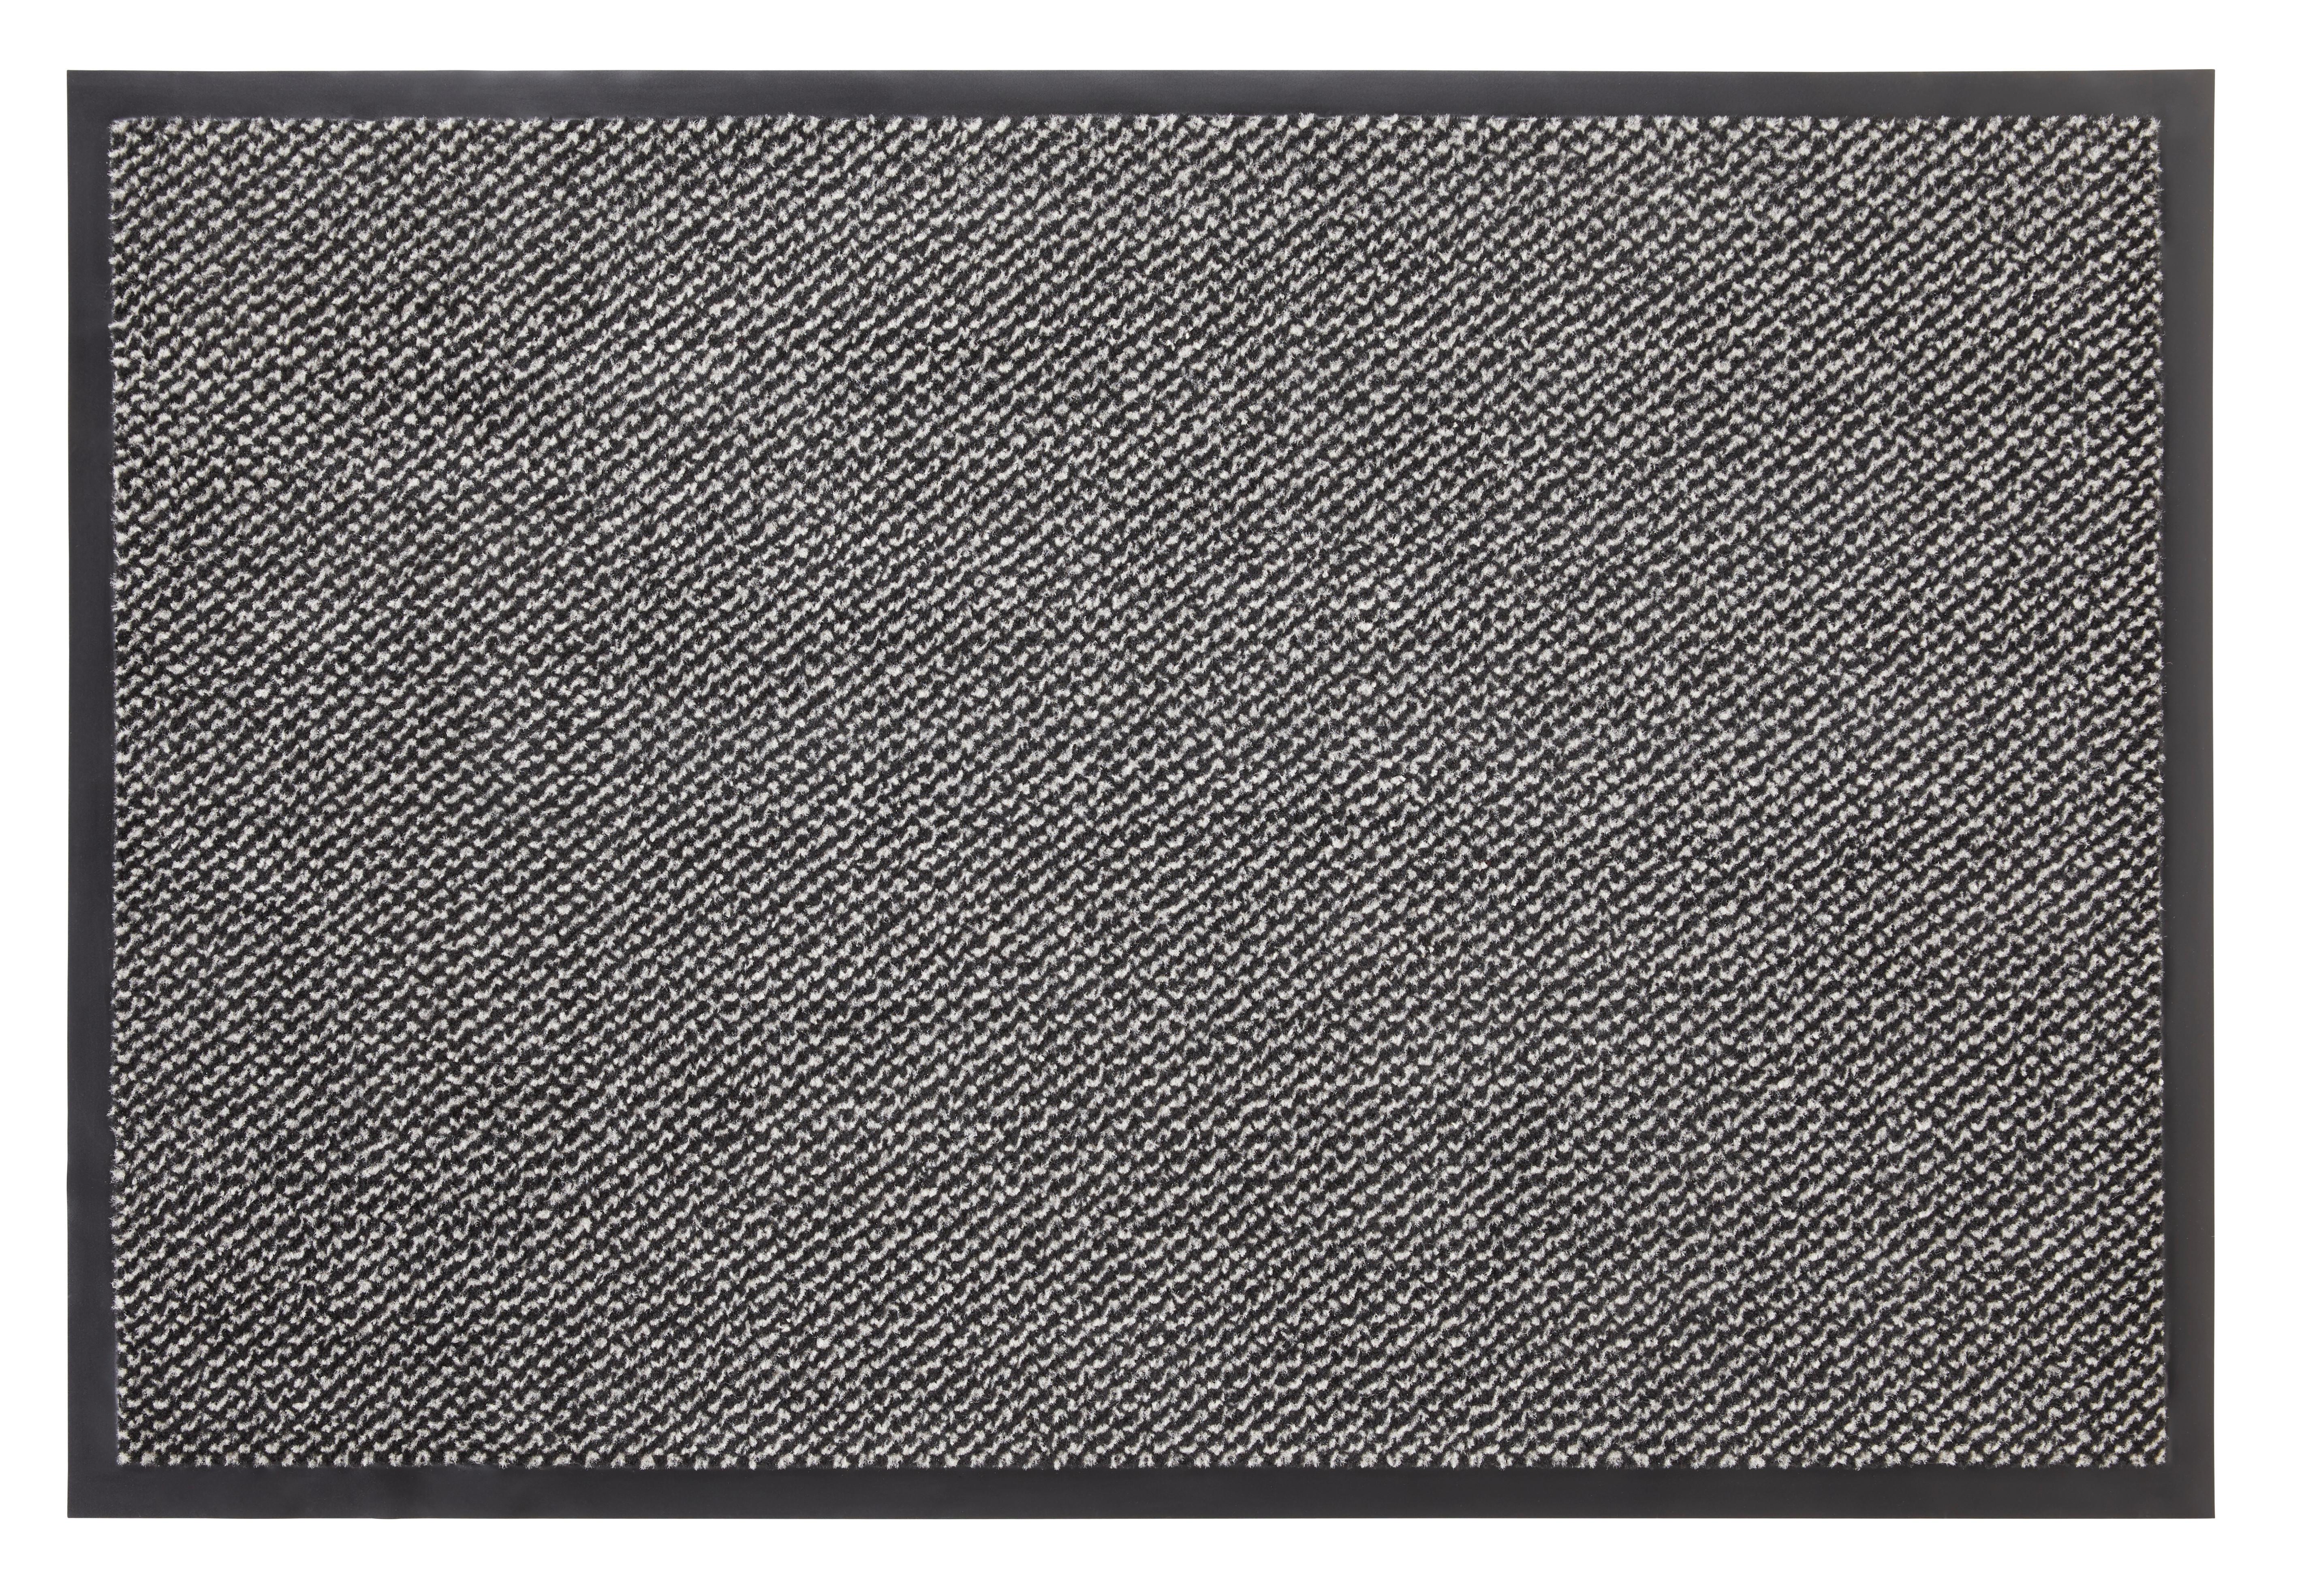 Fußmatte Hampton ca. 80x120cm - Beige/Schwarz, KONVENTIONELL, Textil (80/120cm) - Modern Living